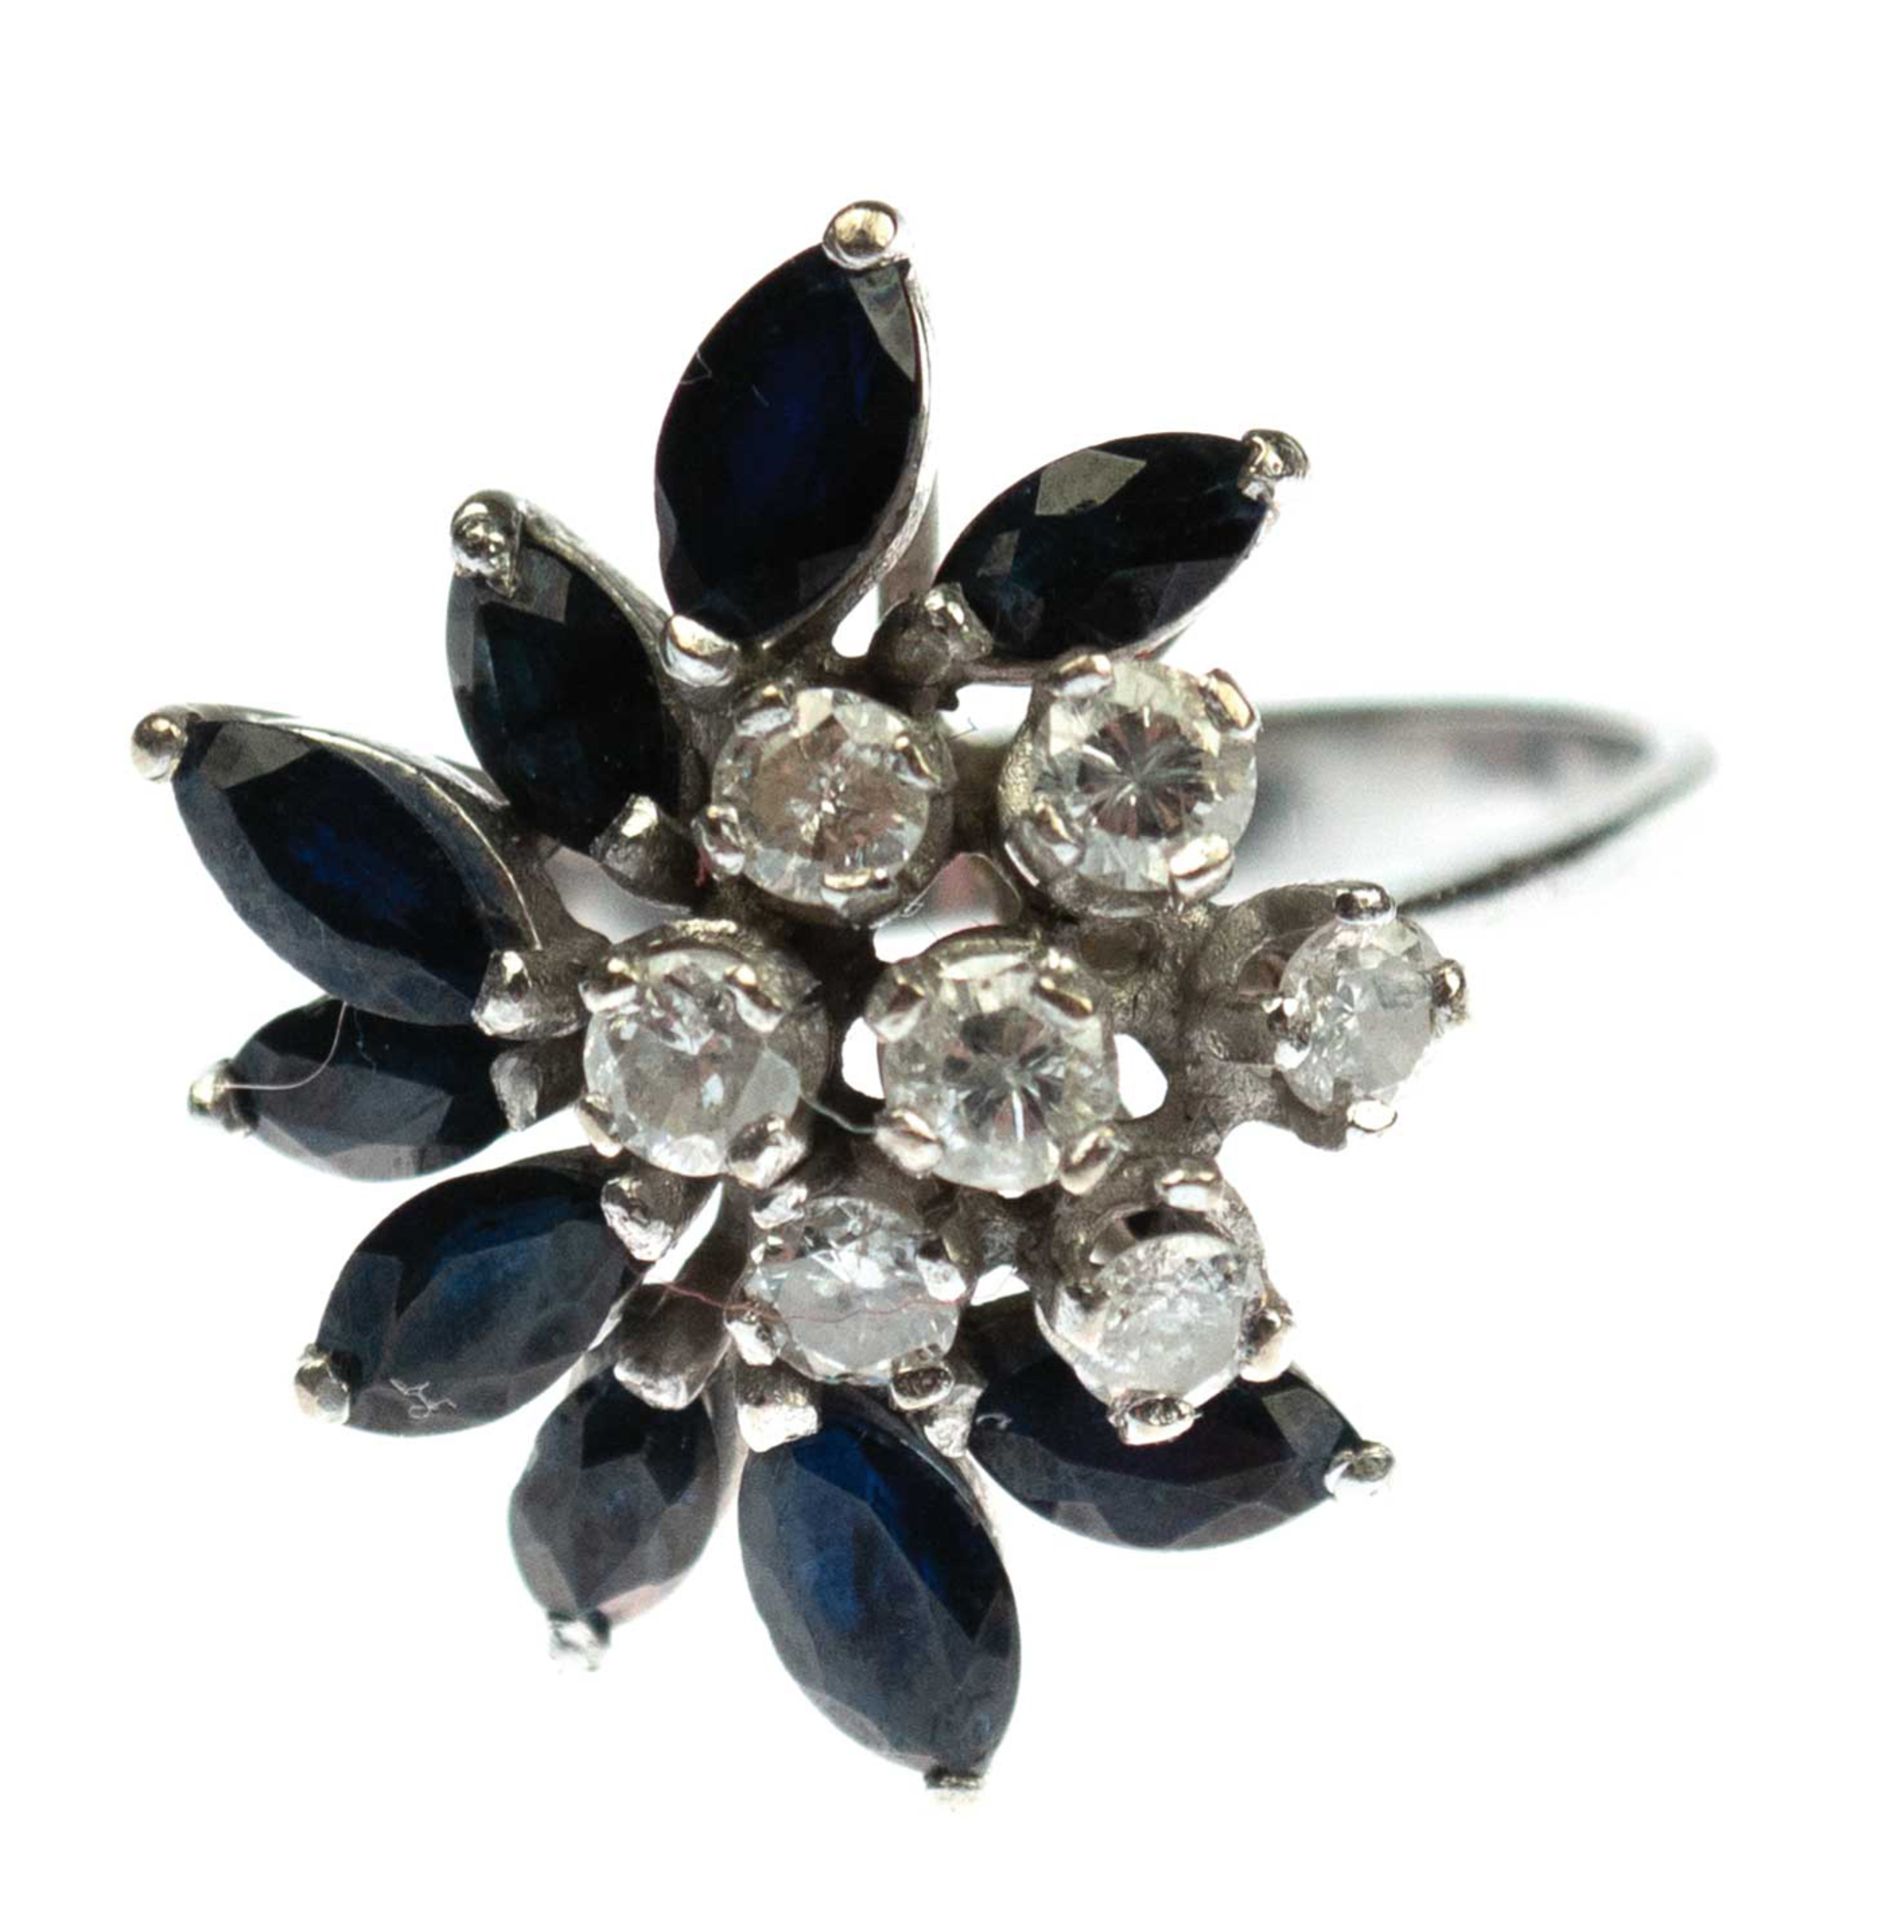 Brillant-Saphir-Ring, 750er WG, floral gestalter Ringkopf besetzt mit 7 Brillanten, vsi,zus. ca. 0,6